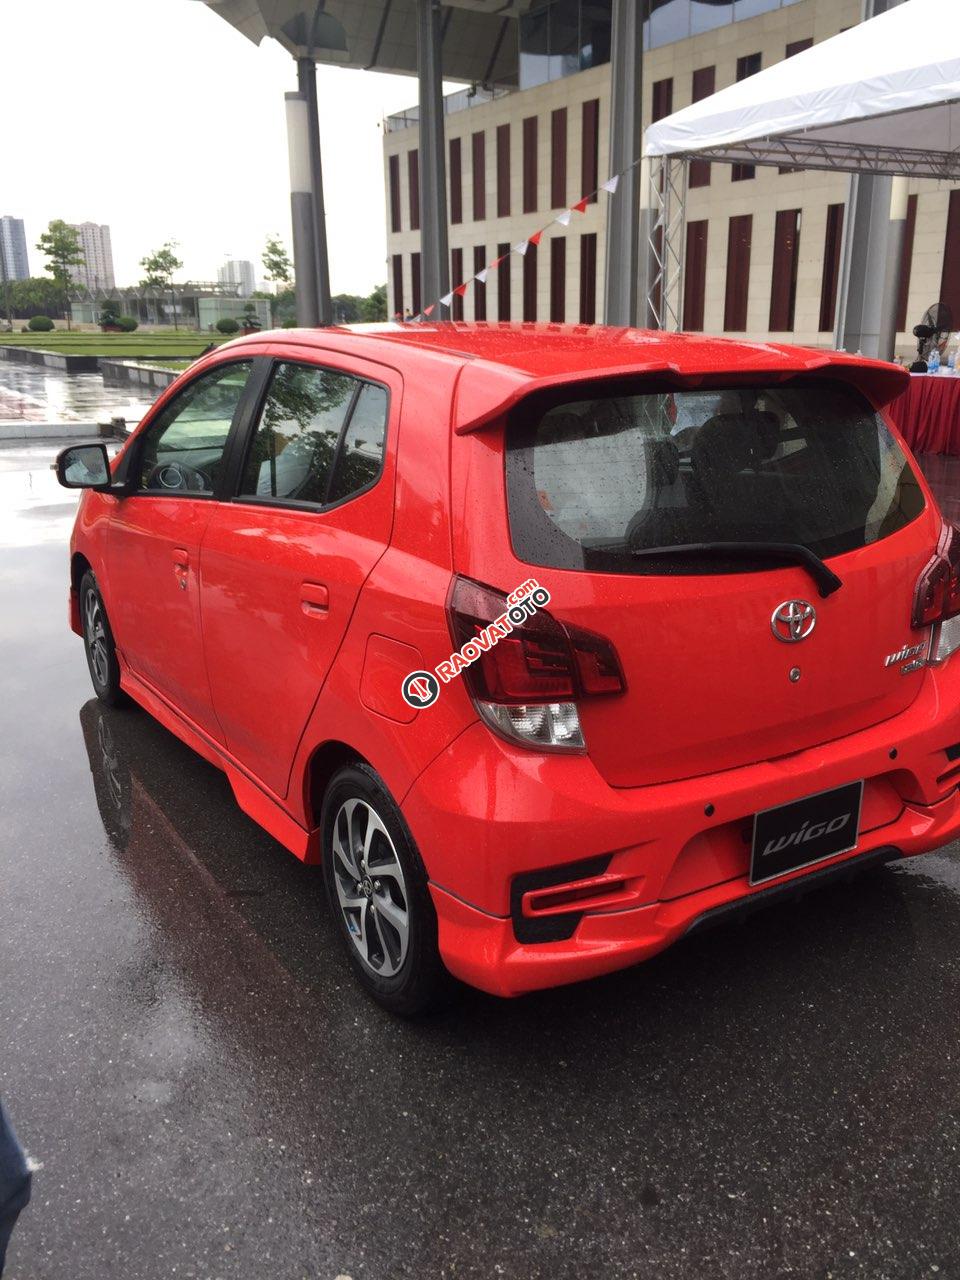 Toyota Vinh-Nghệ An-Hotline: 0904.72.52.66 - Bán xe Wigo giá tốt nhất Nghệ An, trả góp lãi suất 0%-7